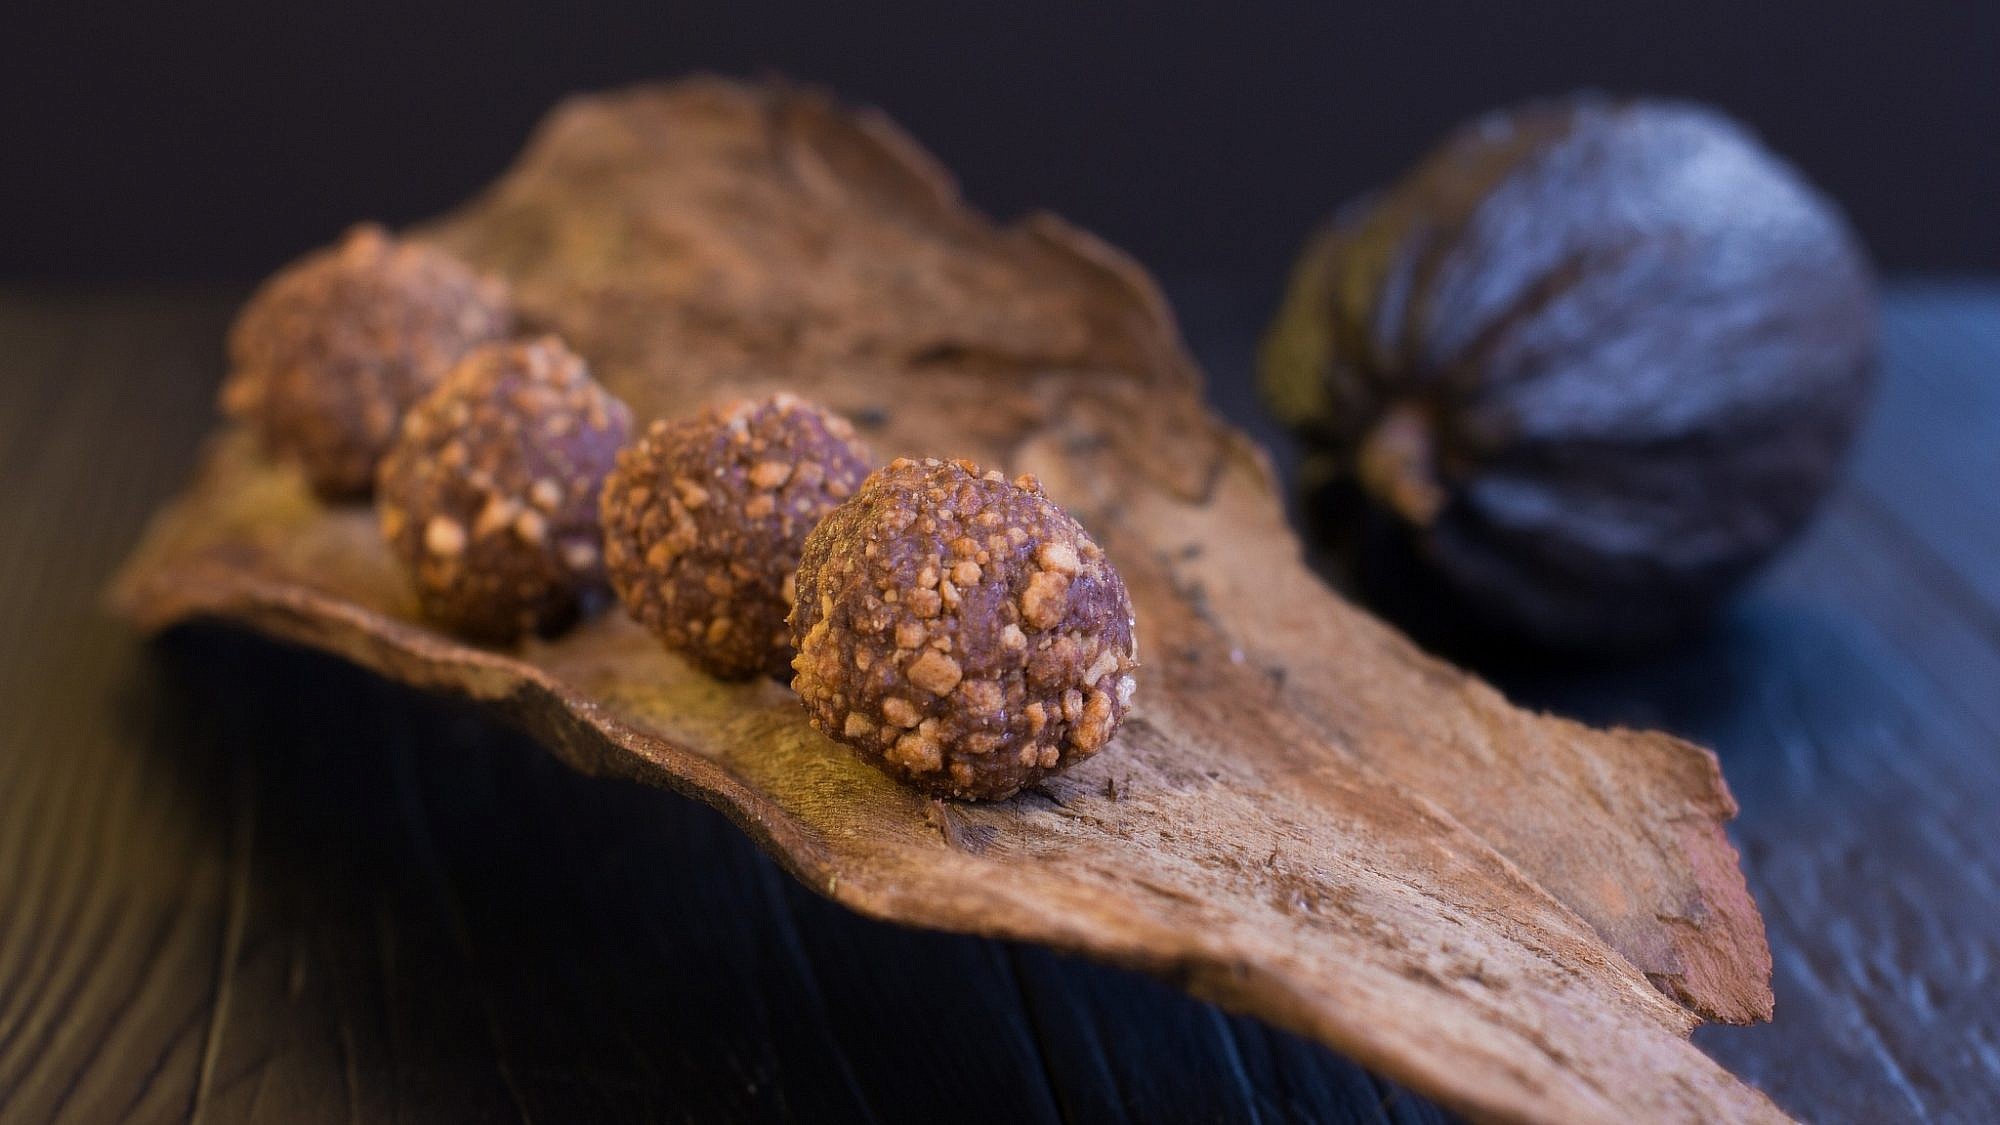 כדורי שוקולד פרלינה בגוון מלוח של הקונדיטור גל קזס. צילום: אייל ג'מילי, סטודיו Food־Foo. סטיילינג: שני הולצקר